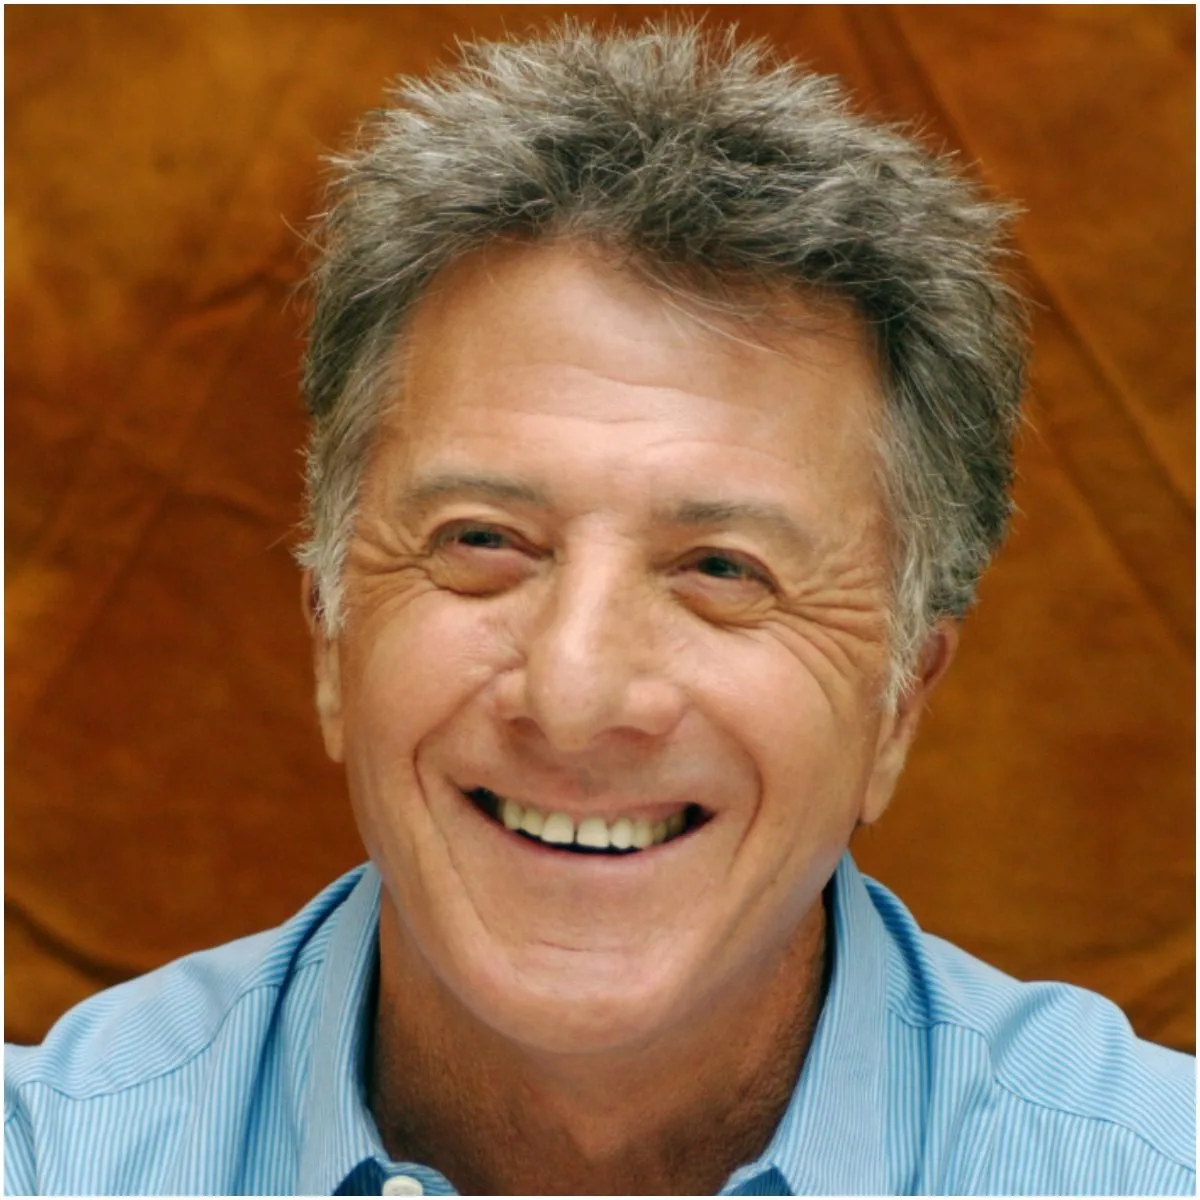 actor Dustin Hoffman